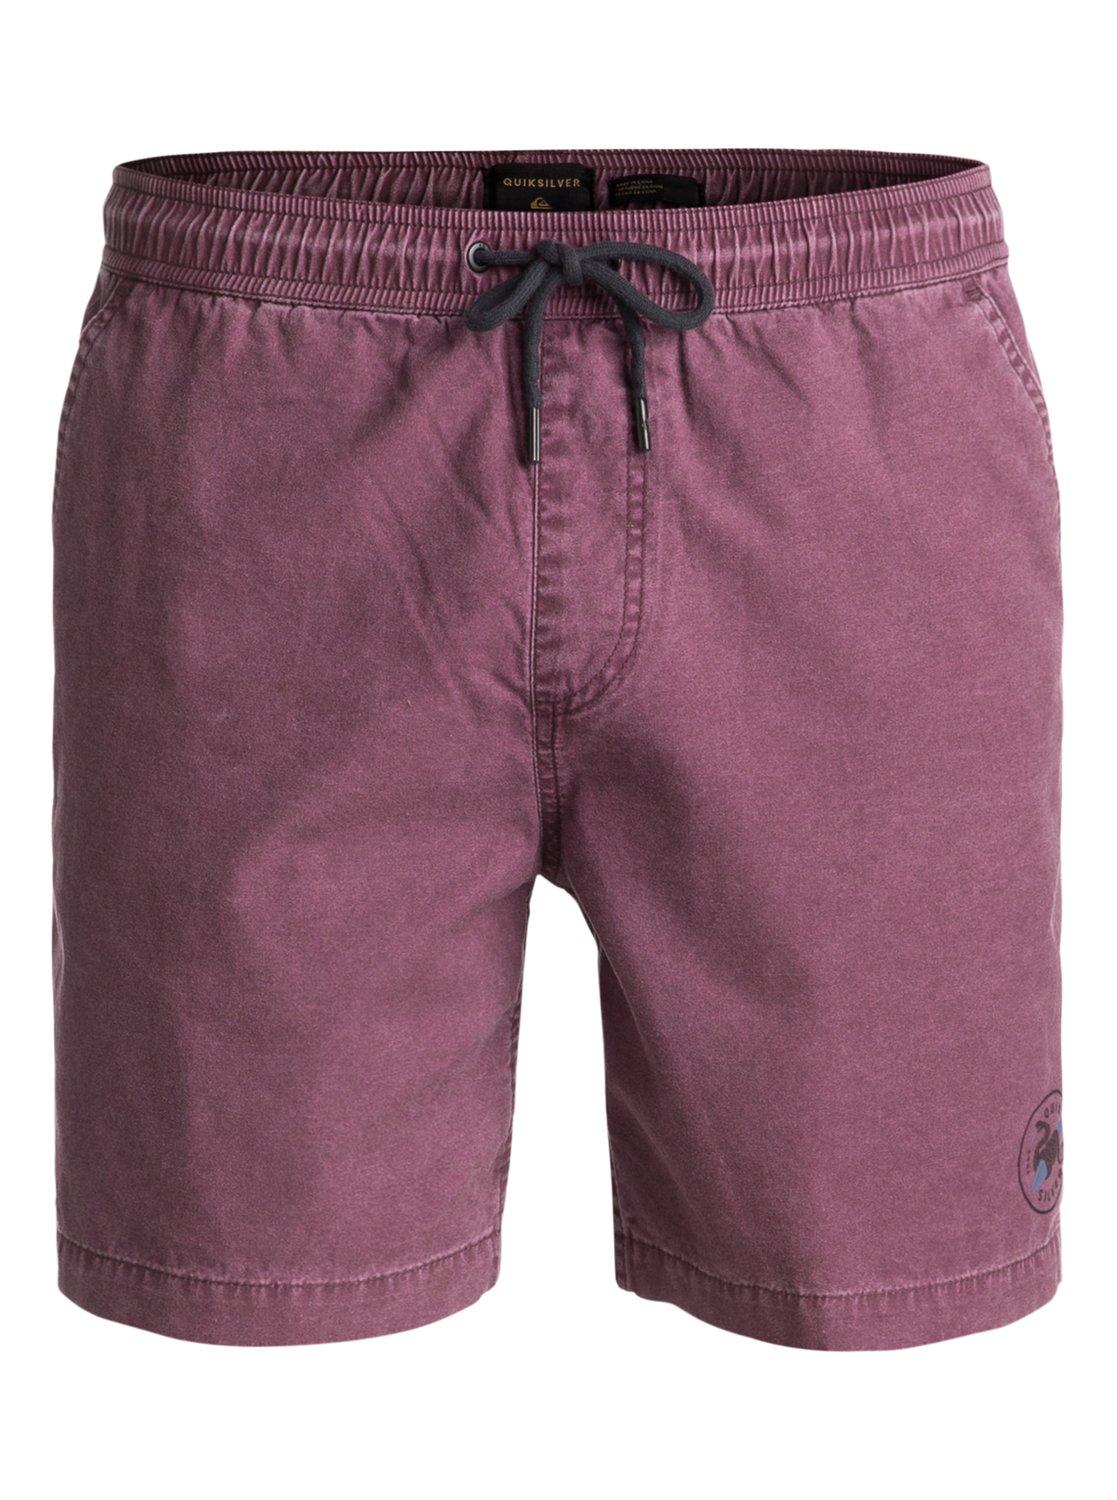 Шорты льюиса. Фиолетовые шорты мужские. Сиреневые шорты мужские. Мужские шорты сиреневого цвета. Фиолетовые джинсовые шорты мужские.